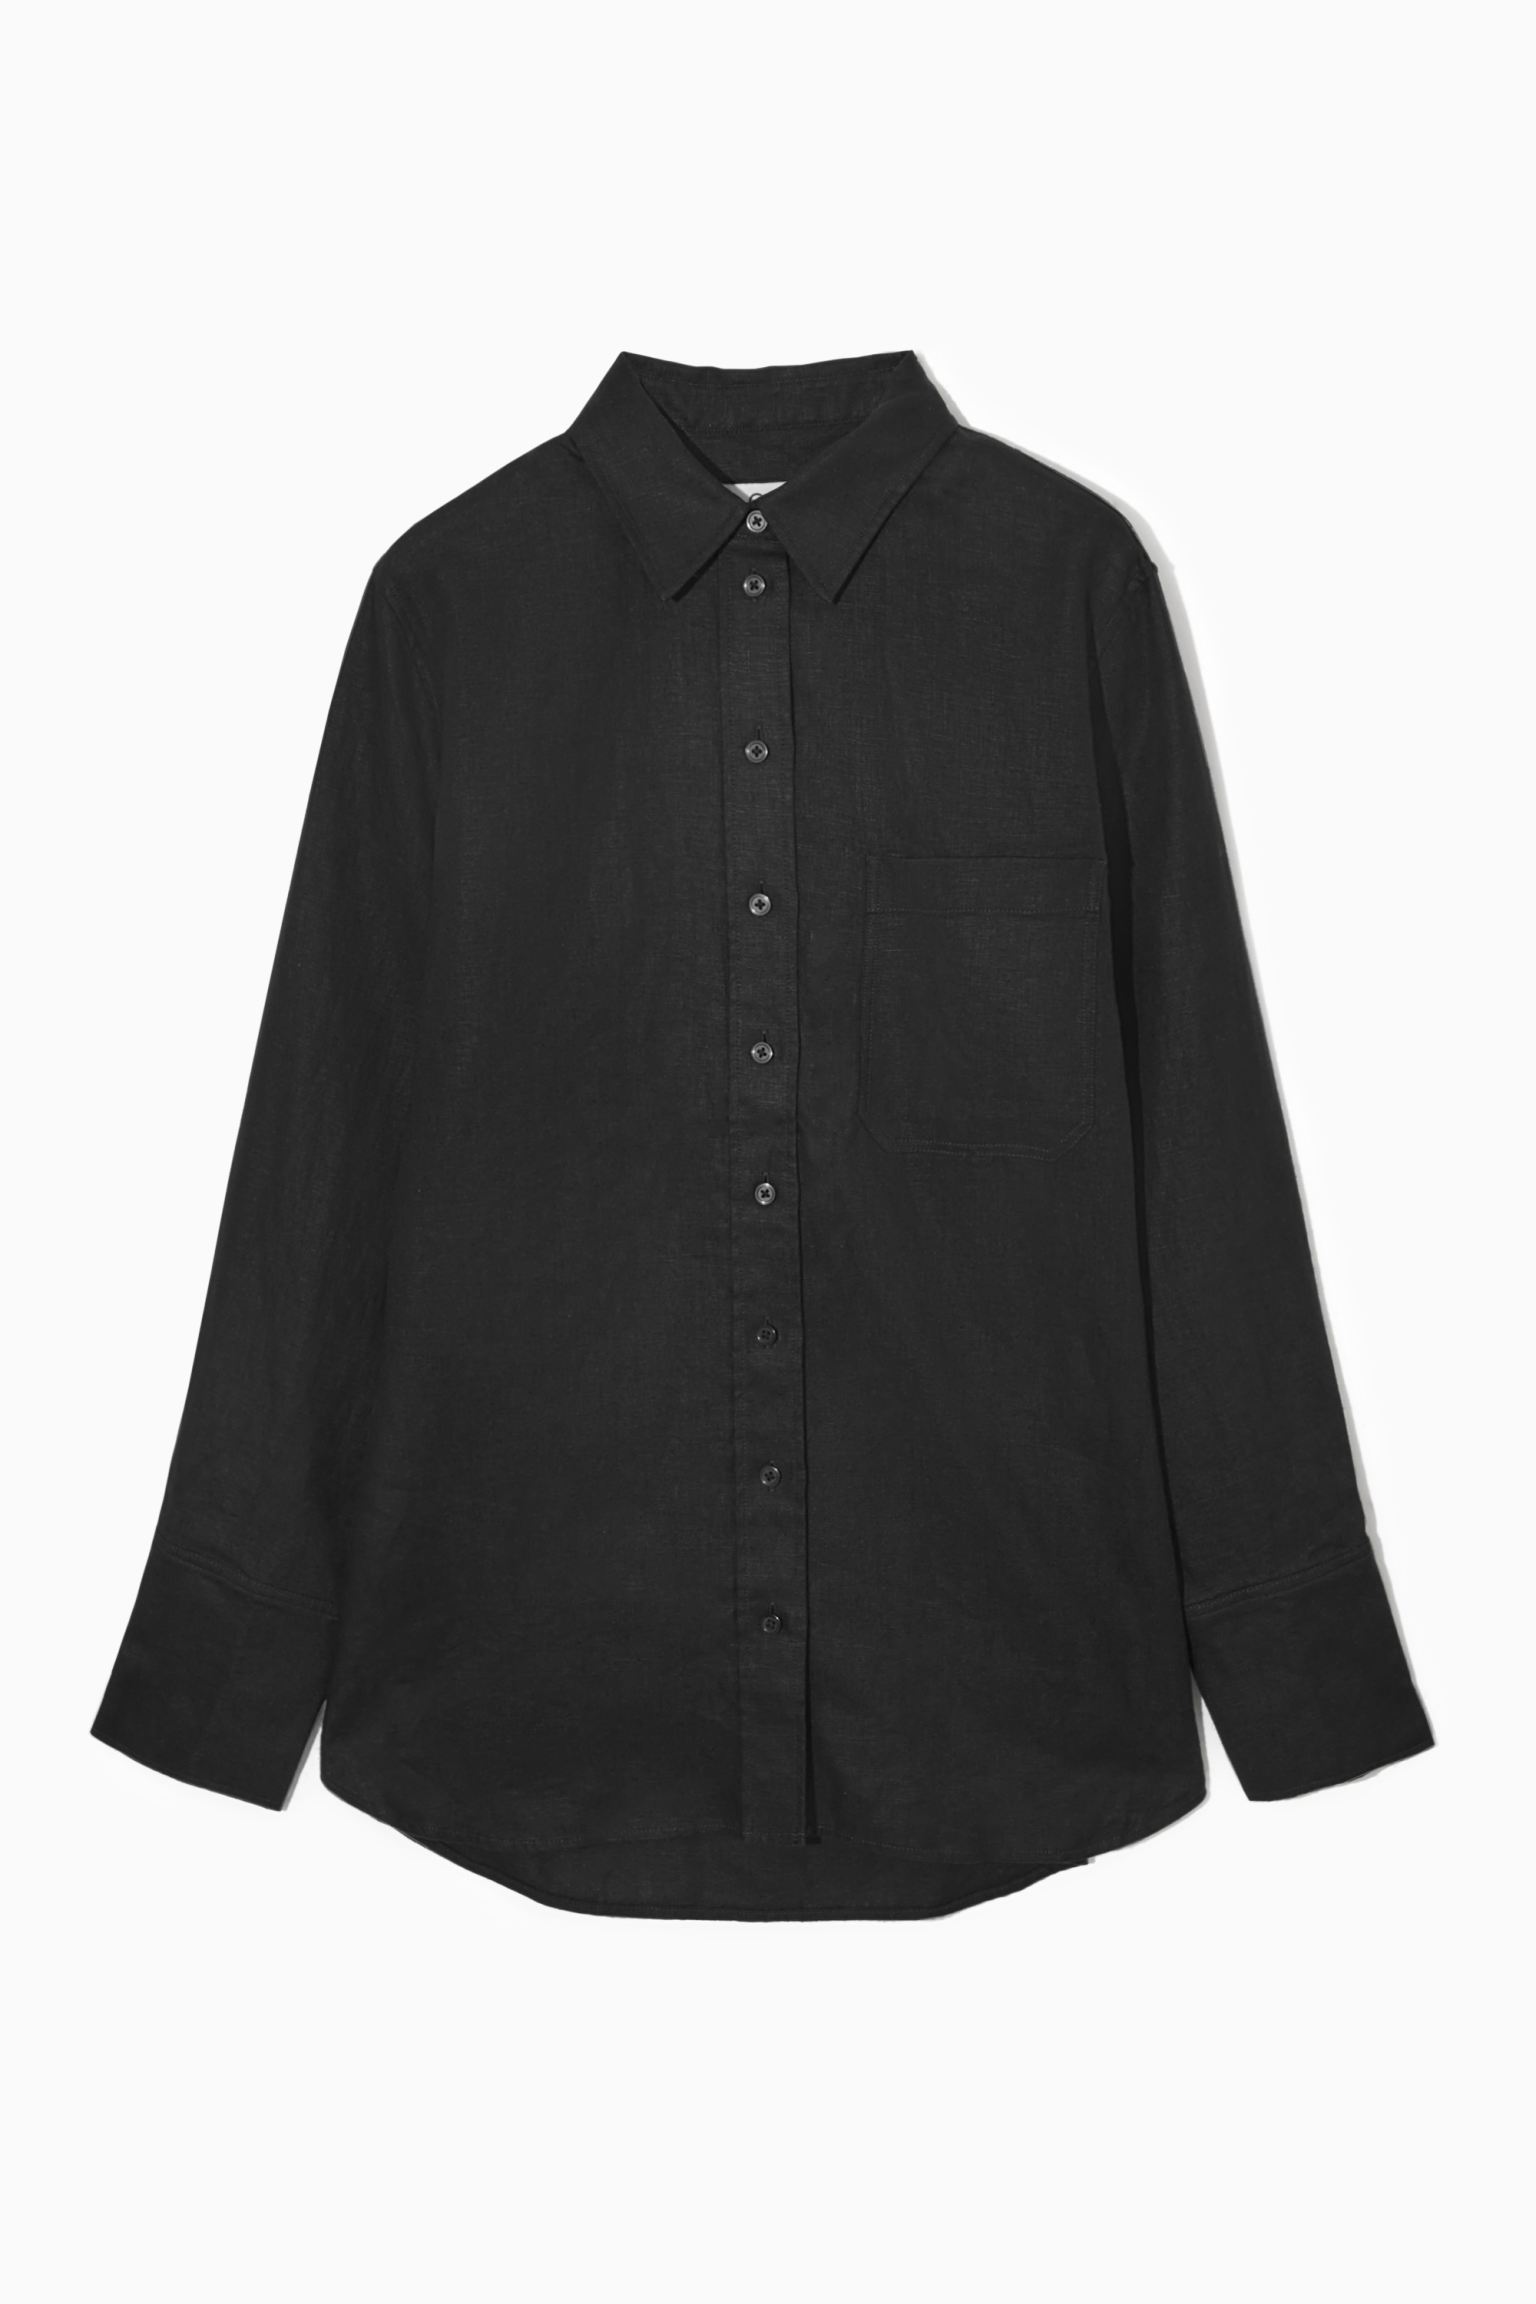 Рубашка женская COS 1163633001 черная 36 (доставка из-за рубежа)